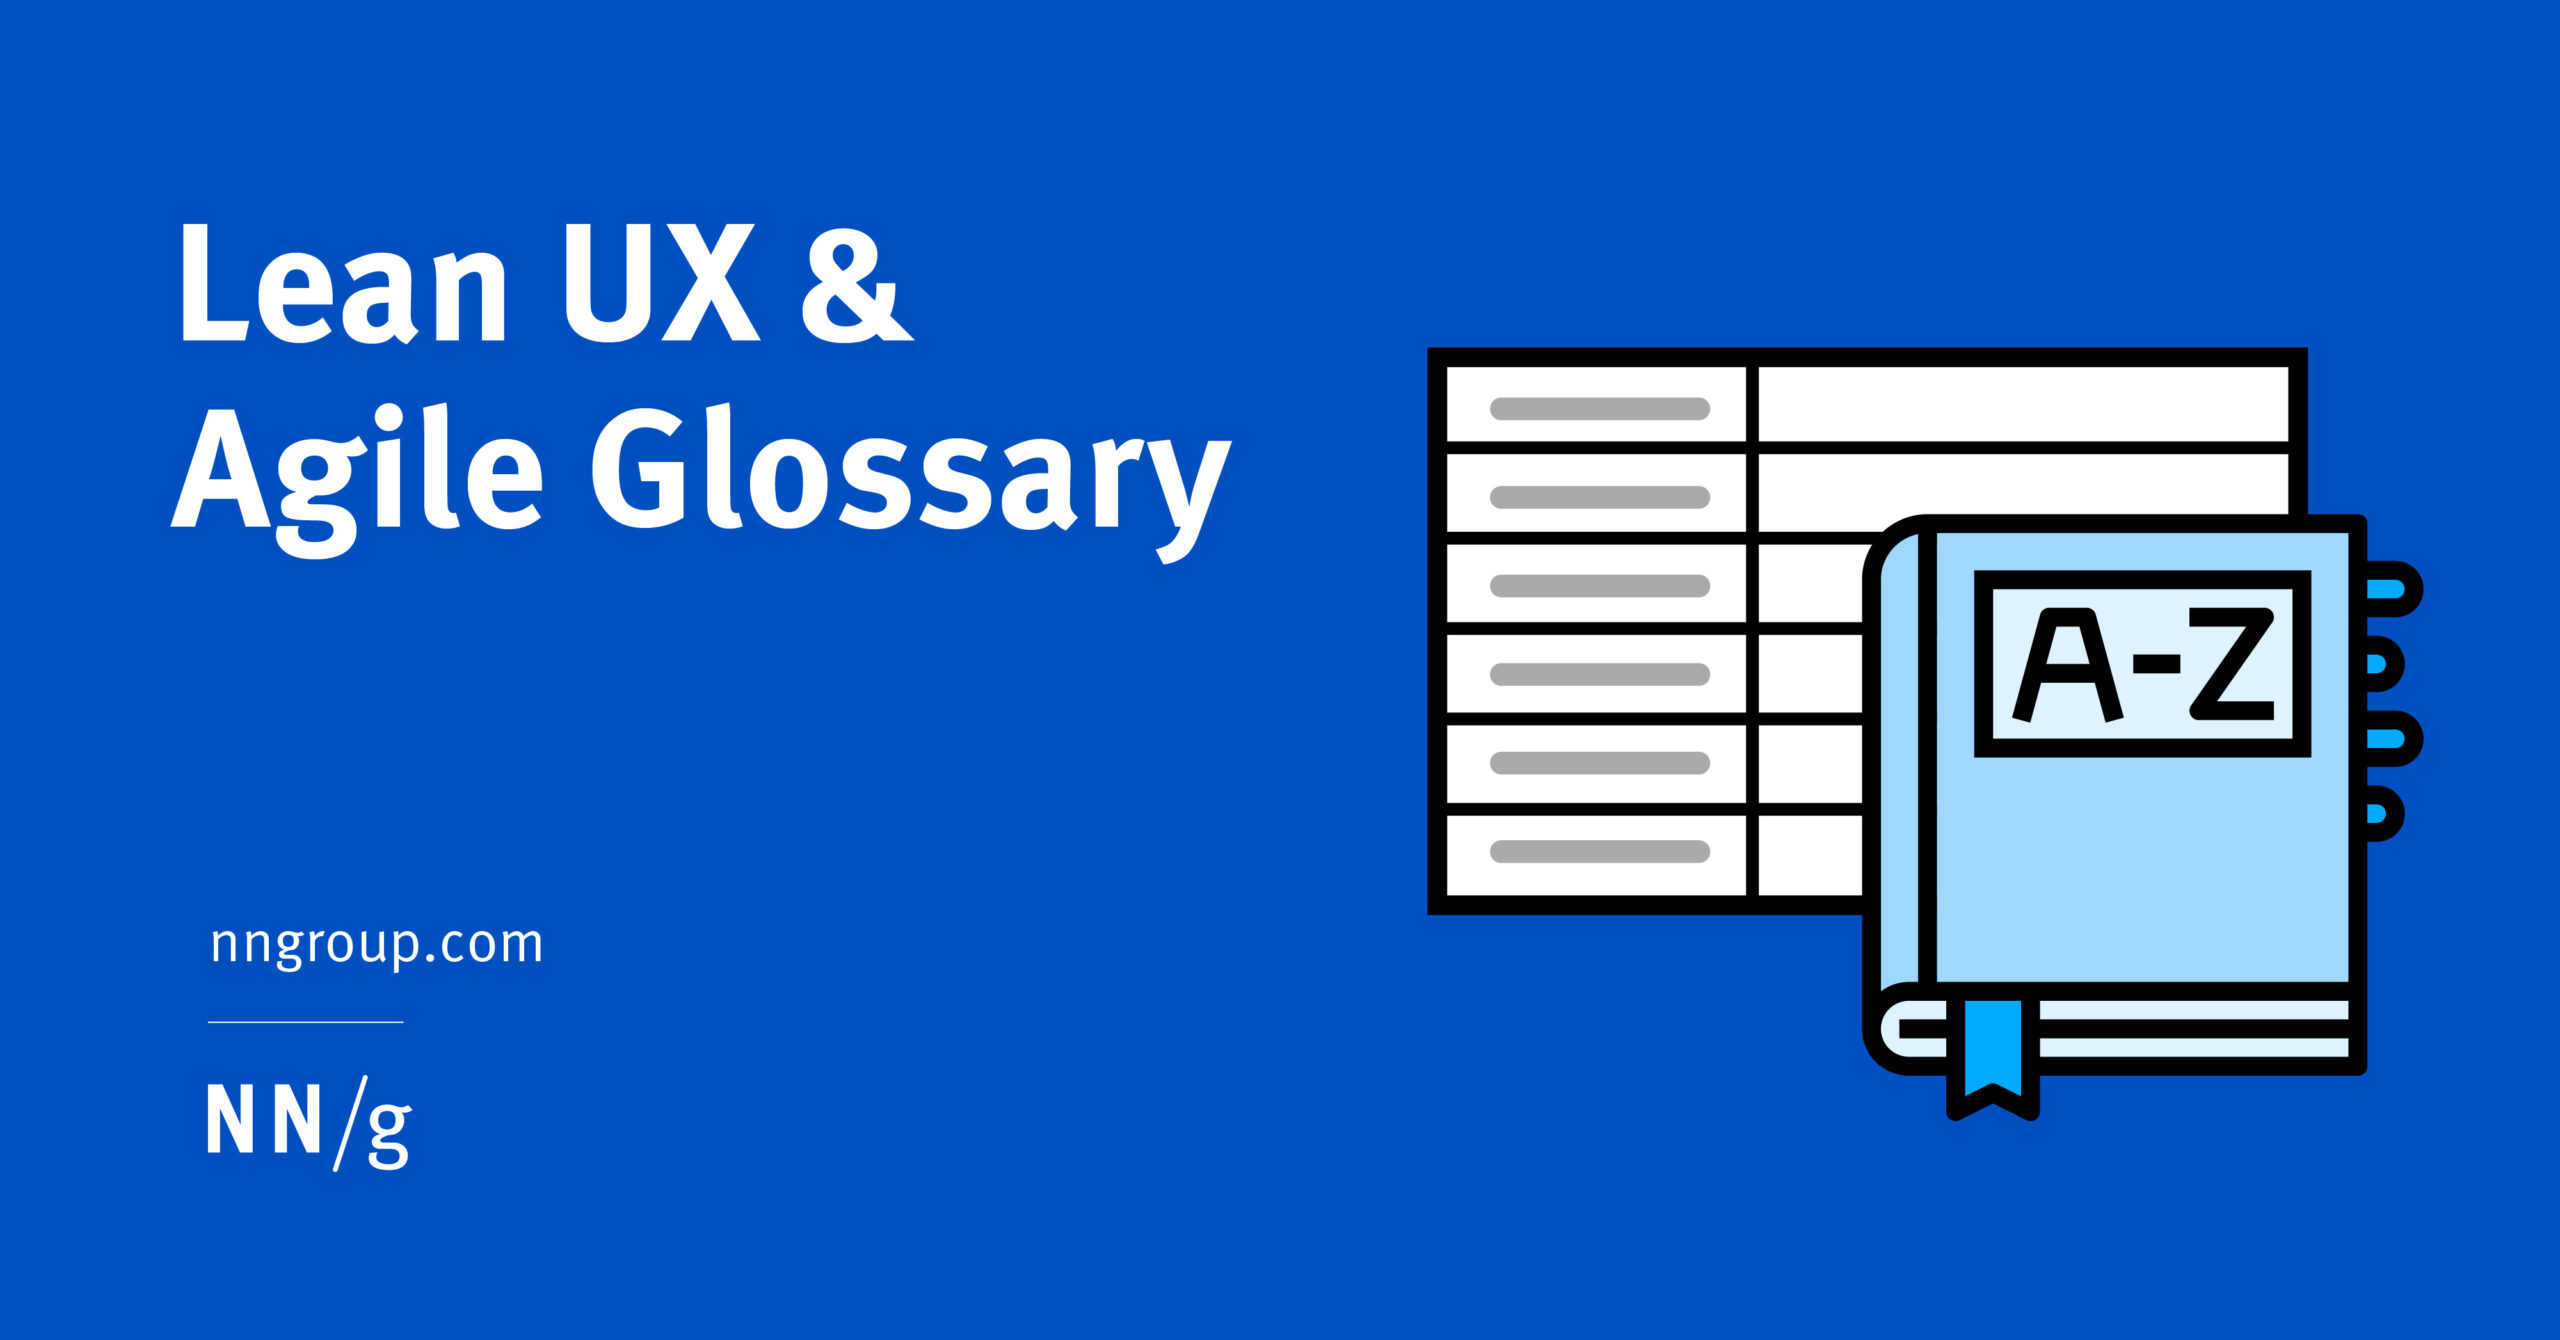 Lean UX & Agile Glossary